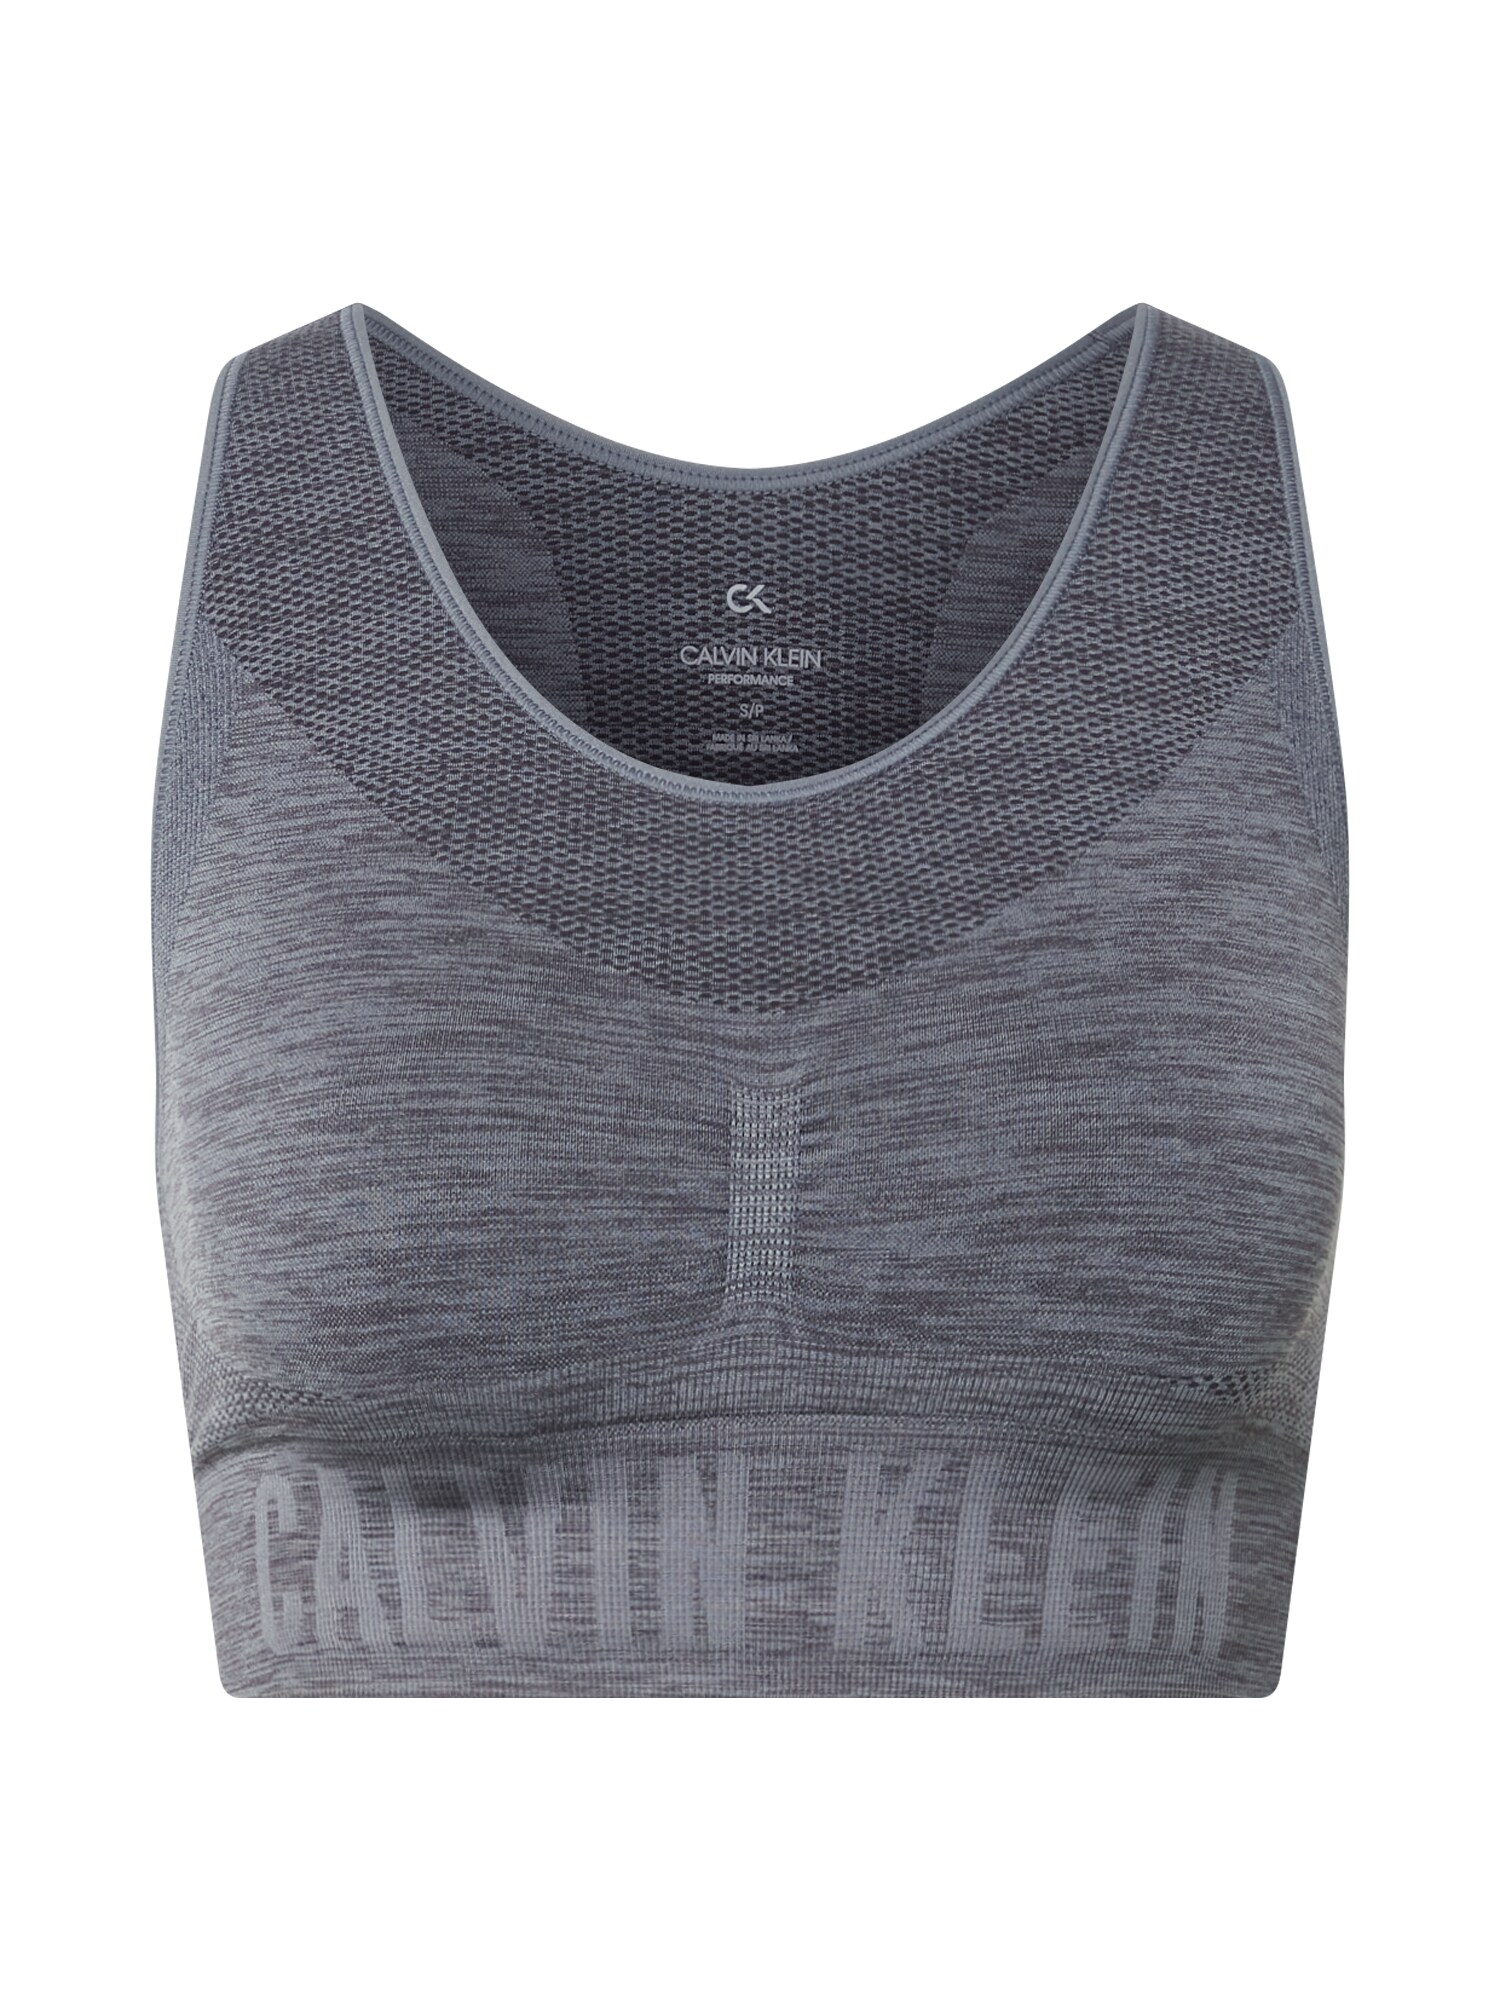 Calvin Klein Performance Sportinė liemenėlė  margai juoda / pilka